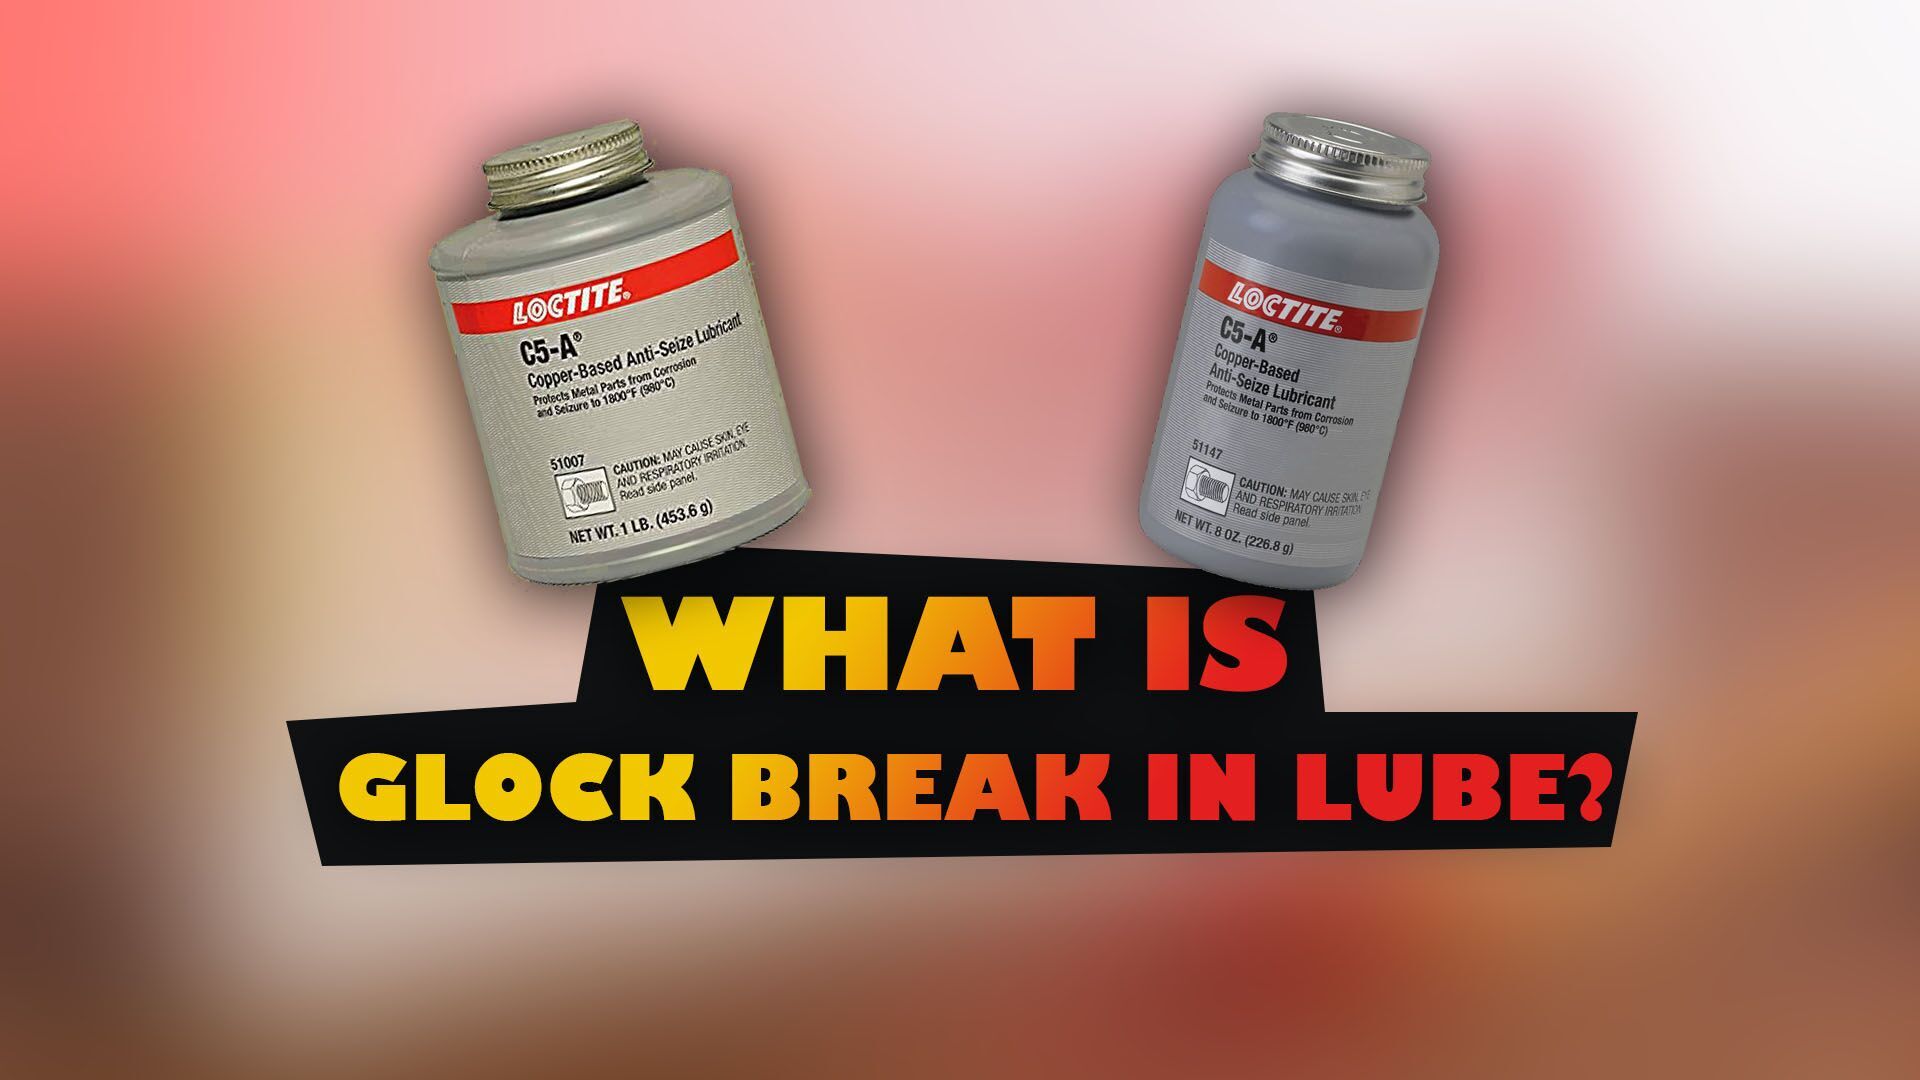 What is Glock Break in Lube?